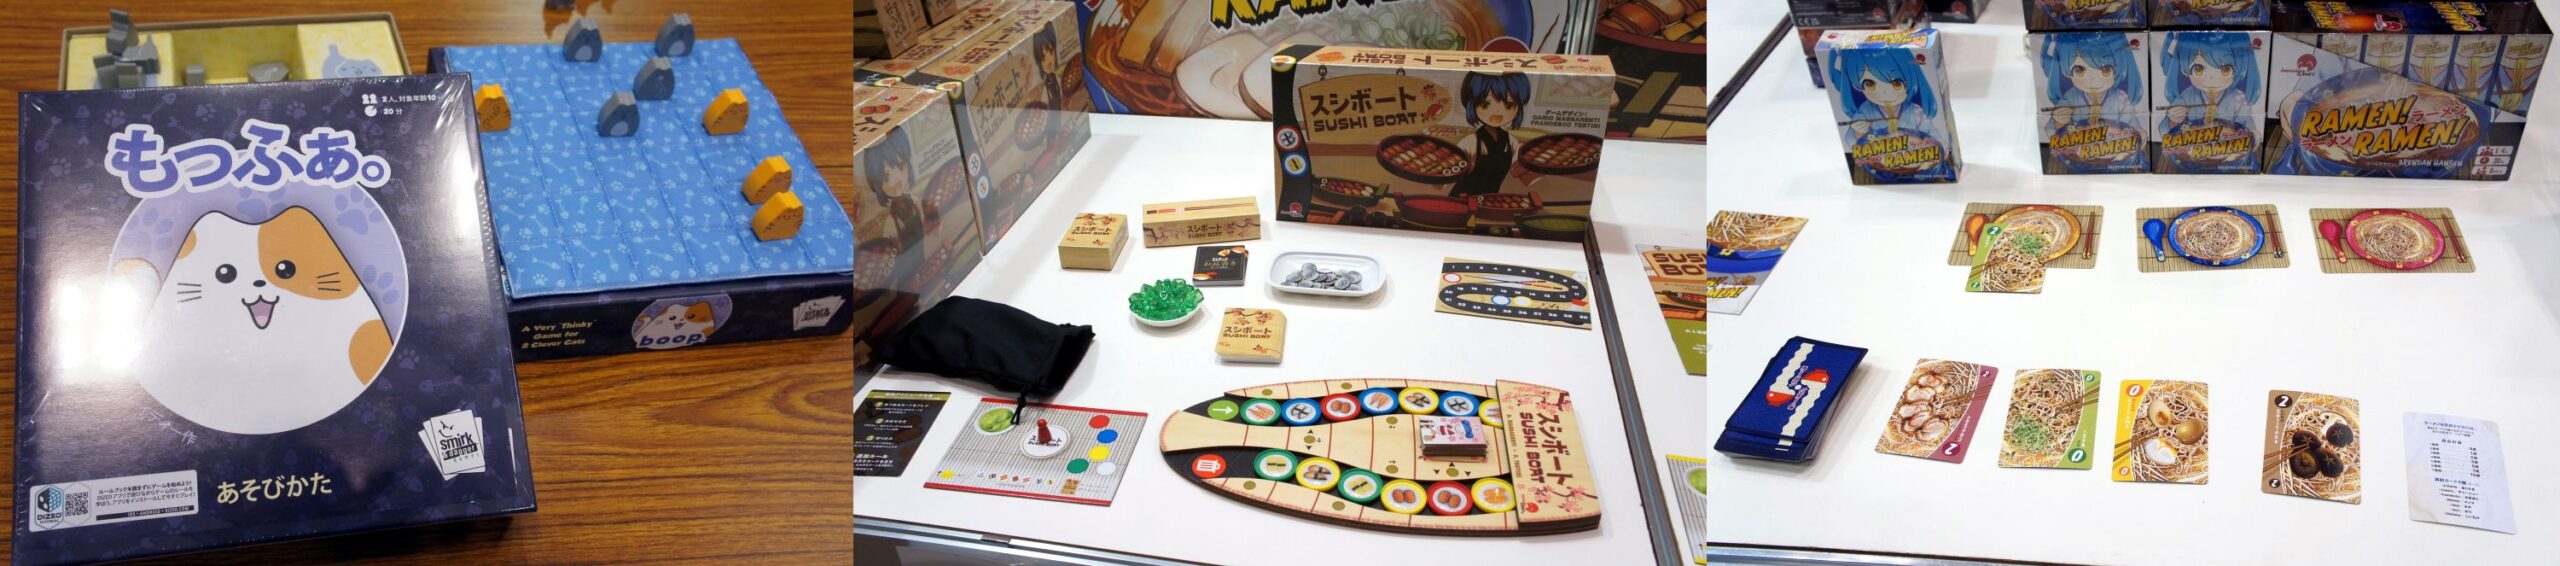 アメリカのメーカーが持ち込んだ日本語版ボードゲーム